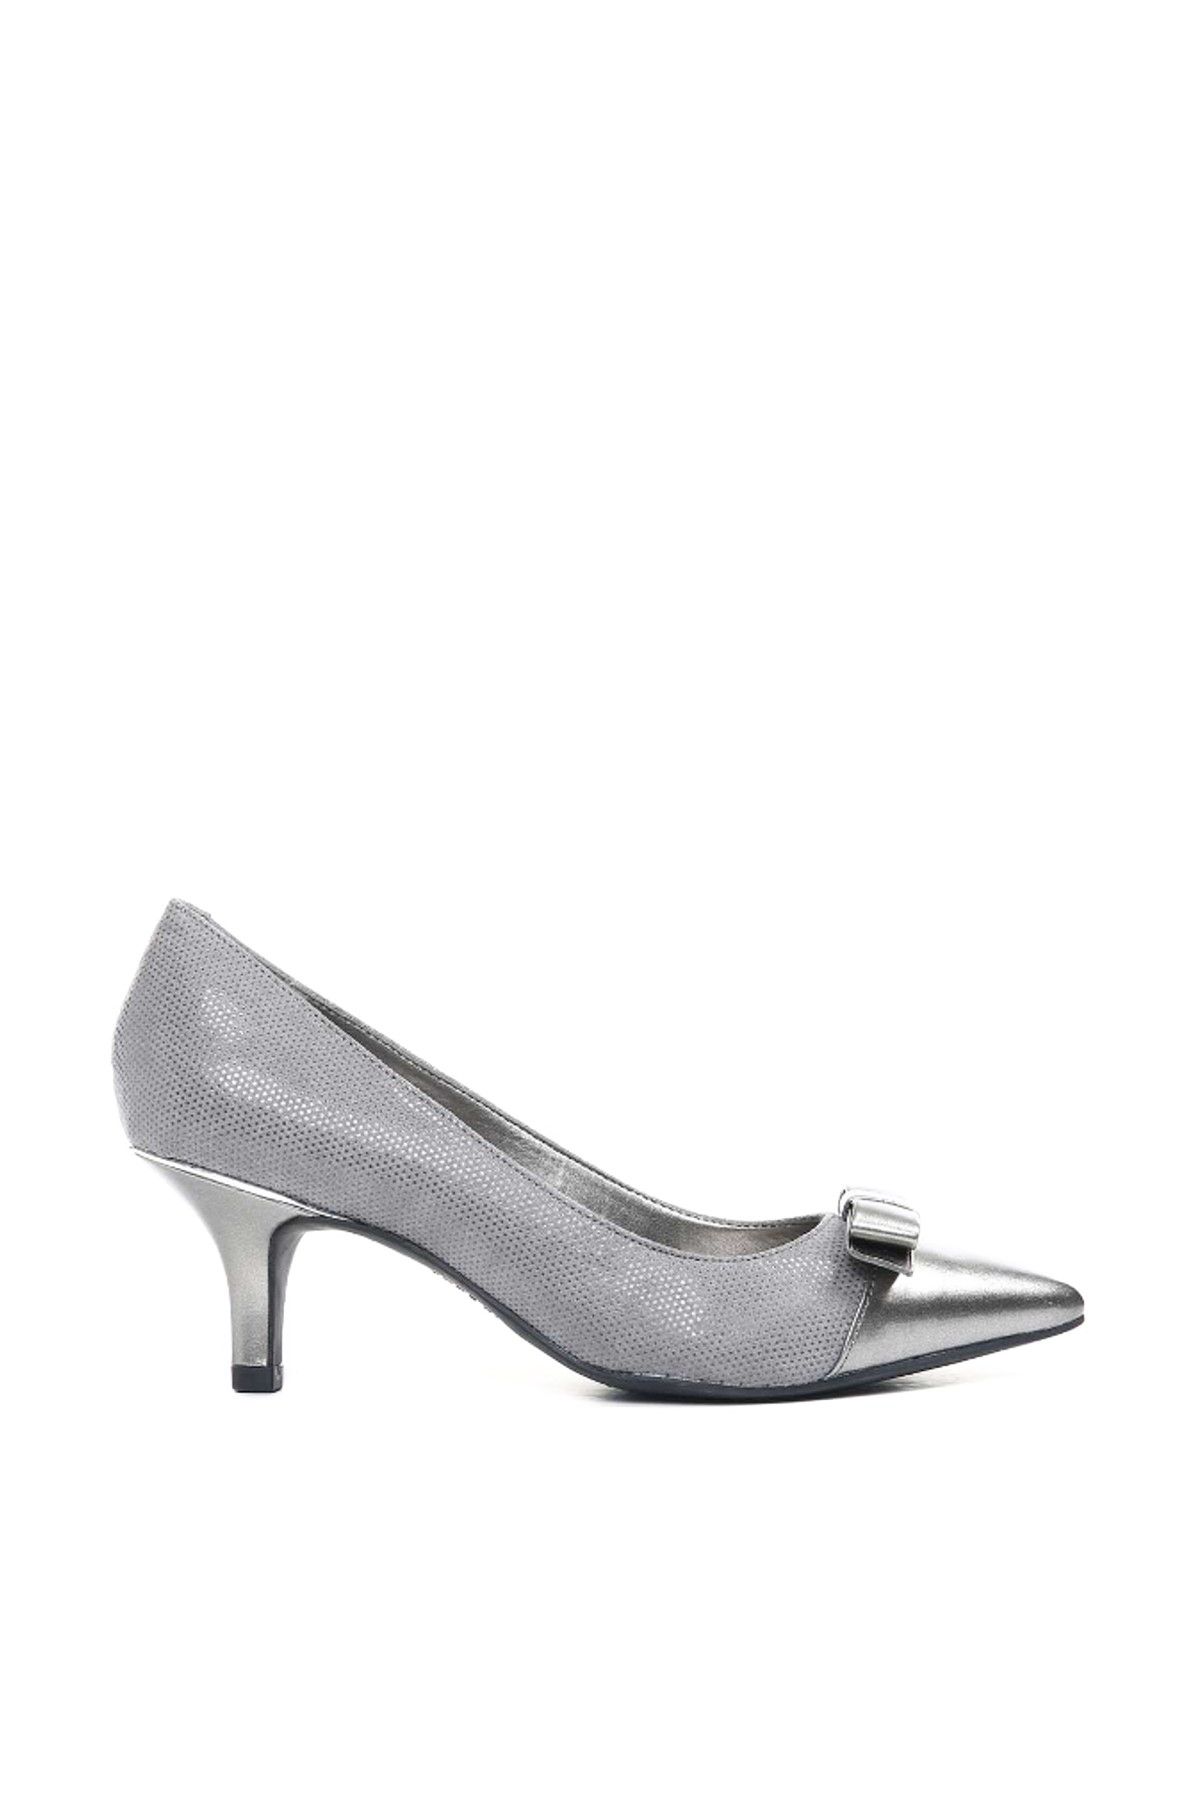 ANNE KLEİN Gümüş Gri Kadın Topuklu Ayakkabı 25020345-GI1